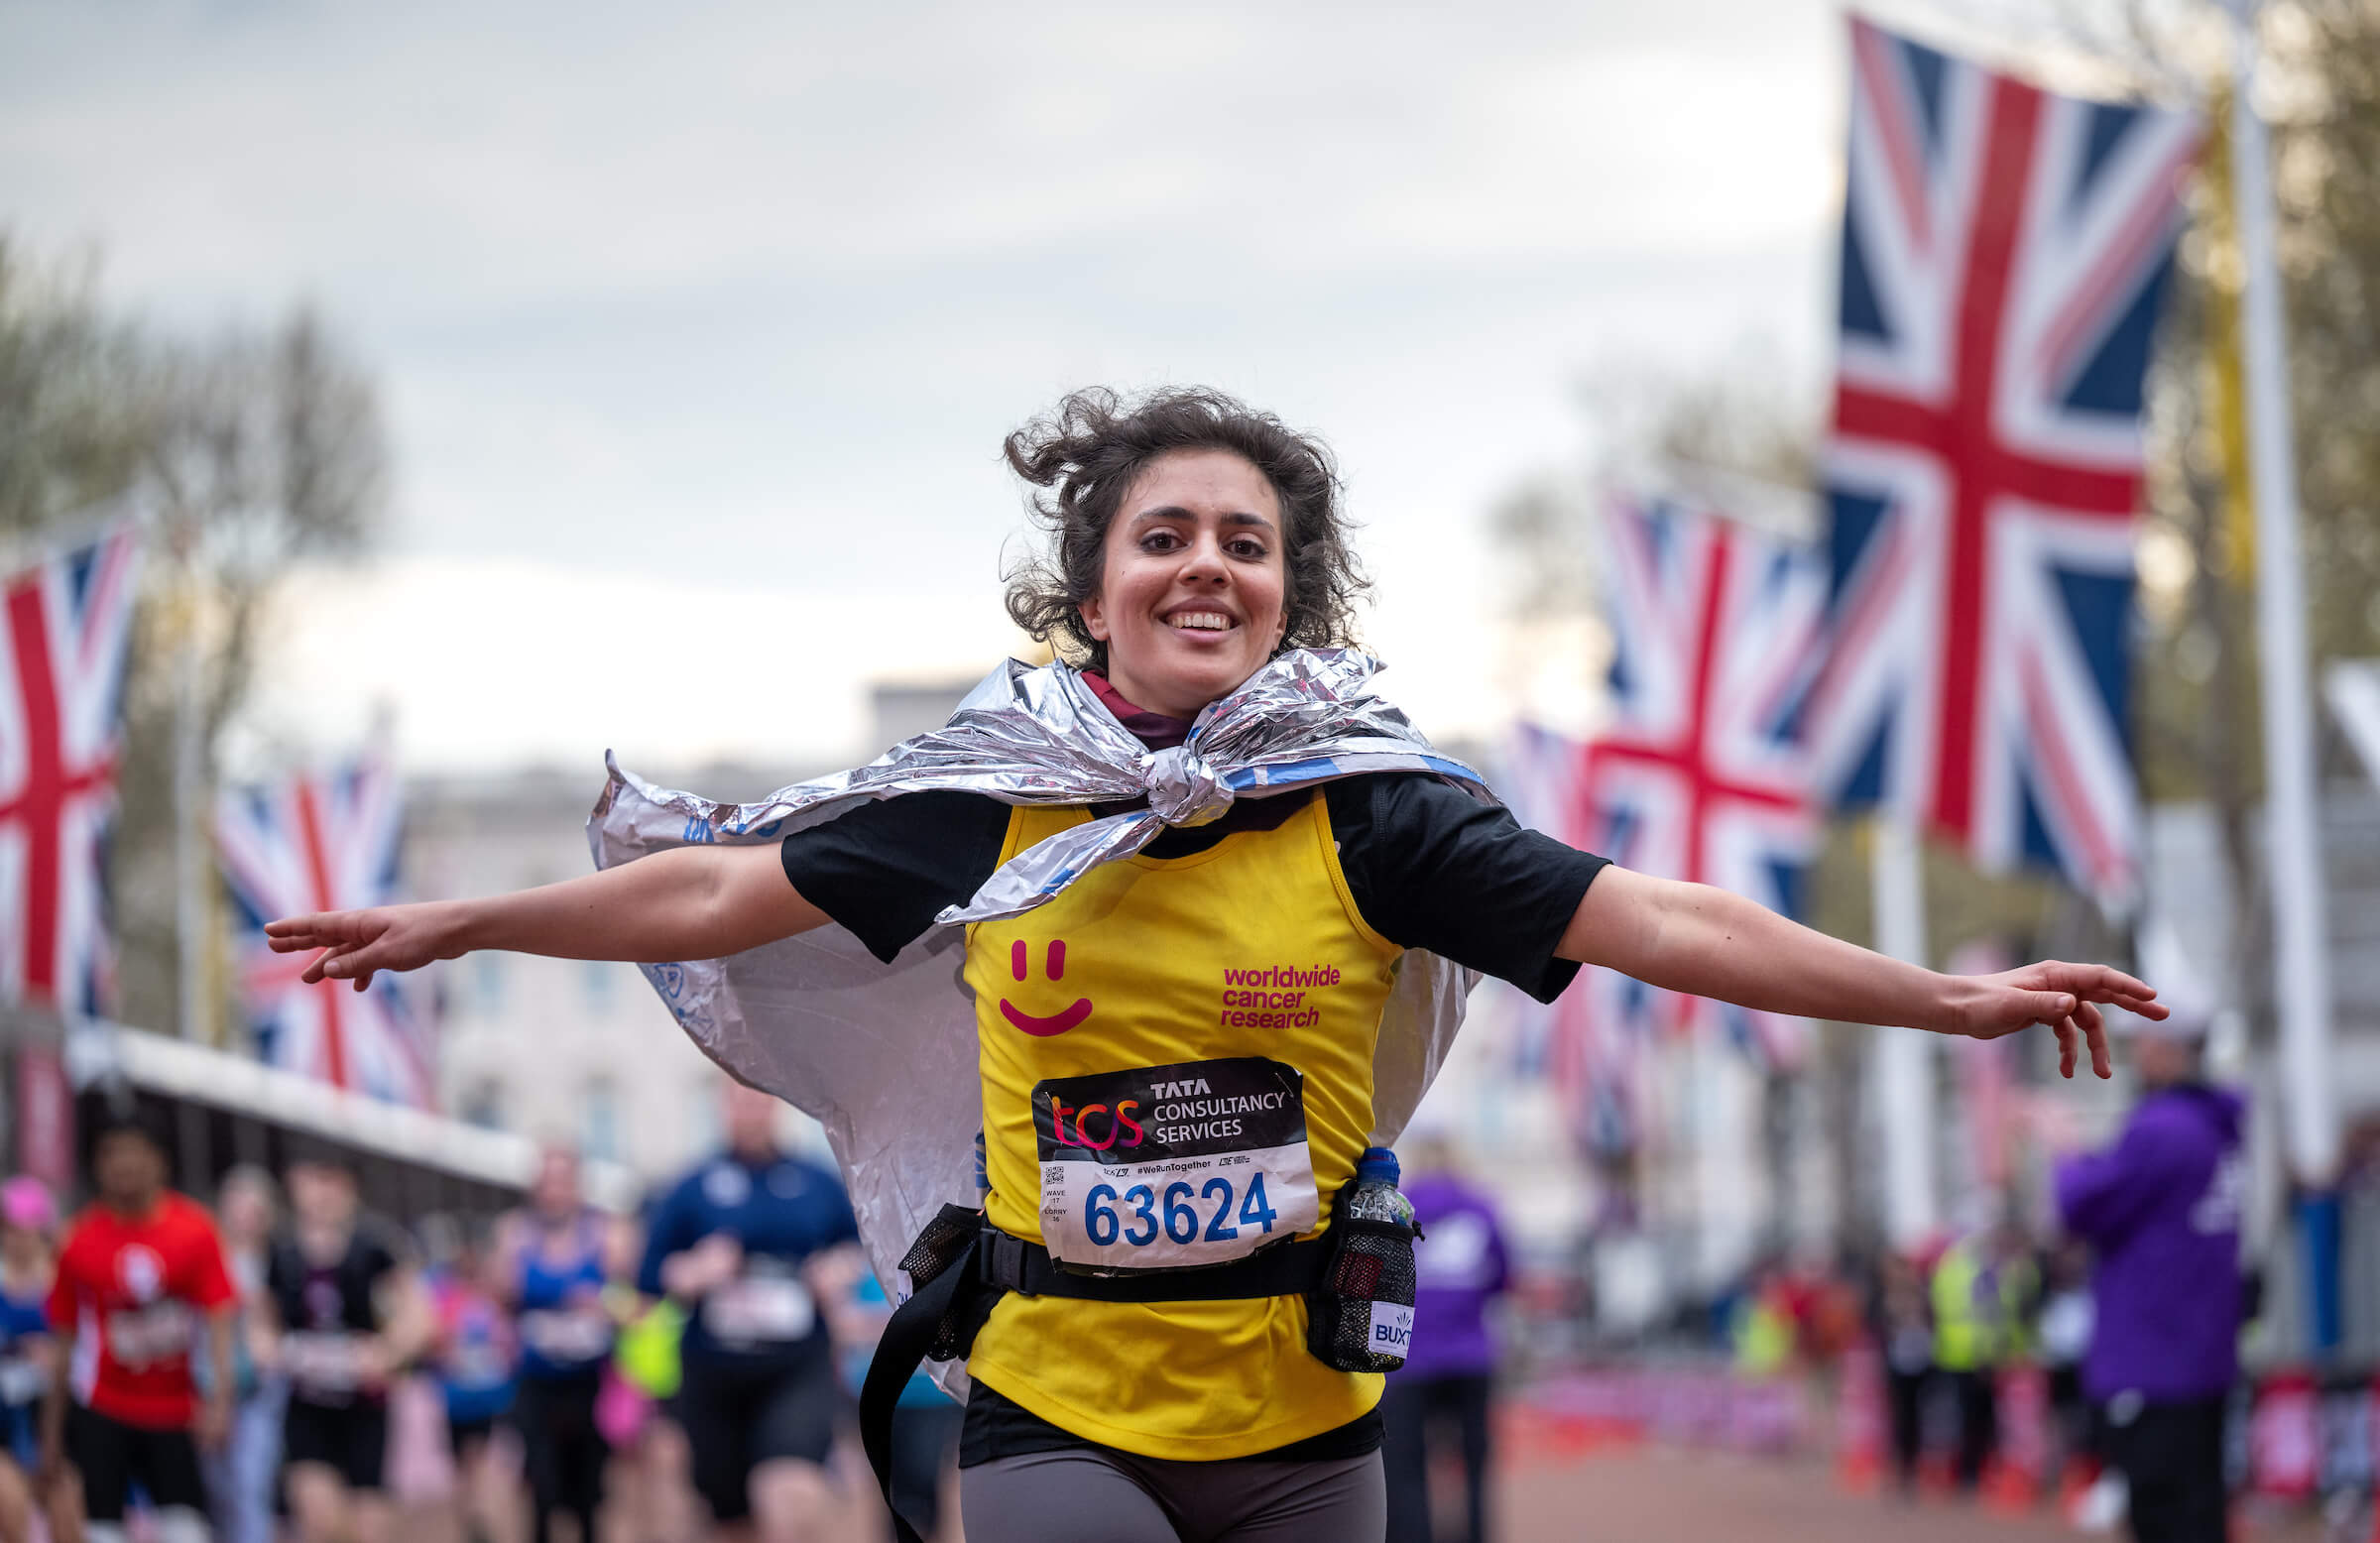 A TCS London Marathon participant runs down The Mall